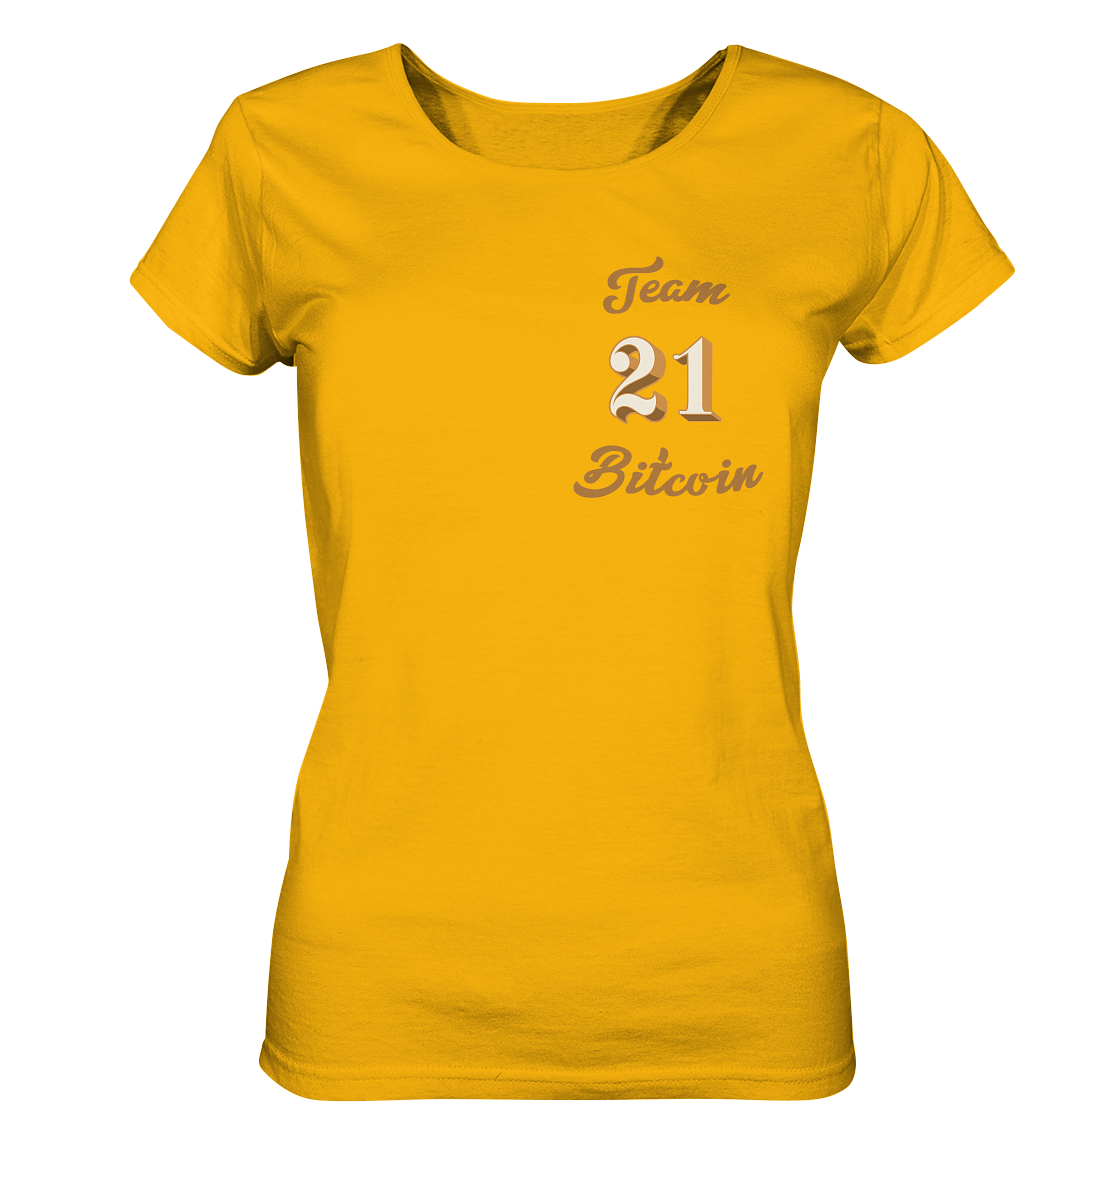 Bitcoin Frauen T-Shirt "Team Bitcoin 21" - Frauen Organic Shirt